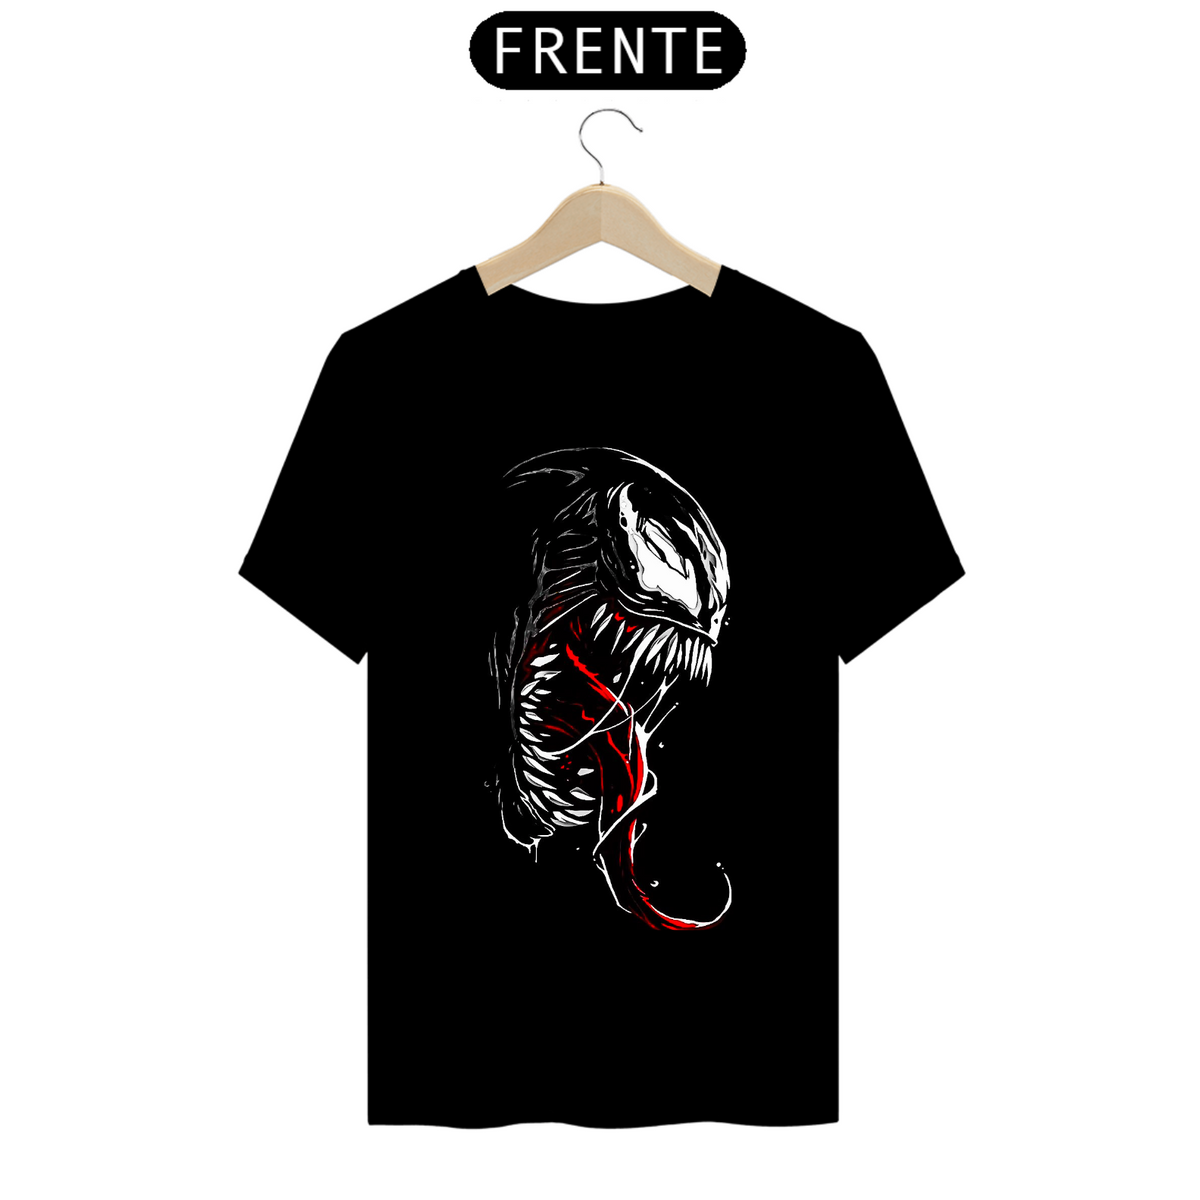 Nome do produto: Camiseta Venom 